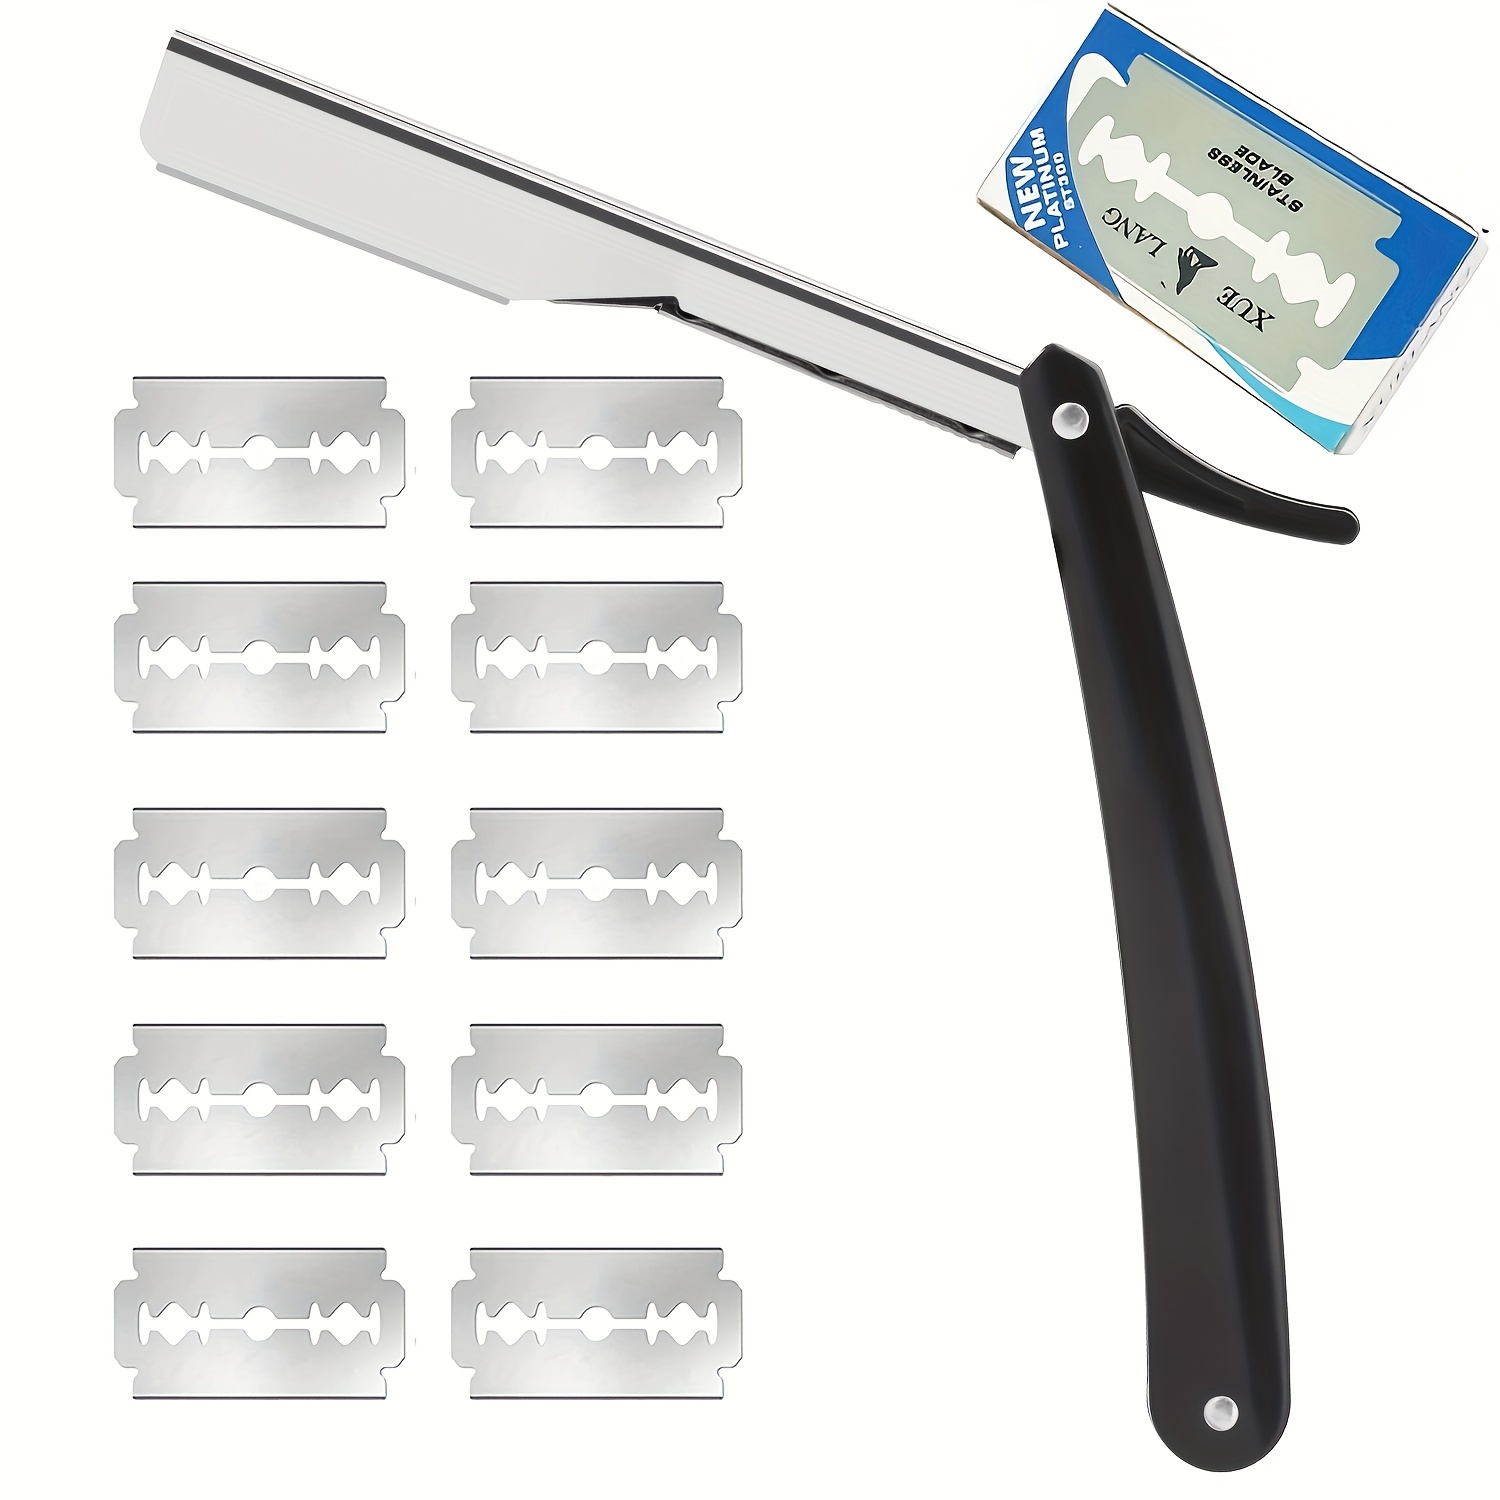 

1pcs Shaving Razor With 10pcs Blades Premium Stainless Steel Shaver Razor For Men Home & Salon Grooming Using Men's Barber Straight Shaving Razors